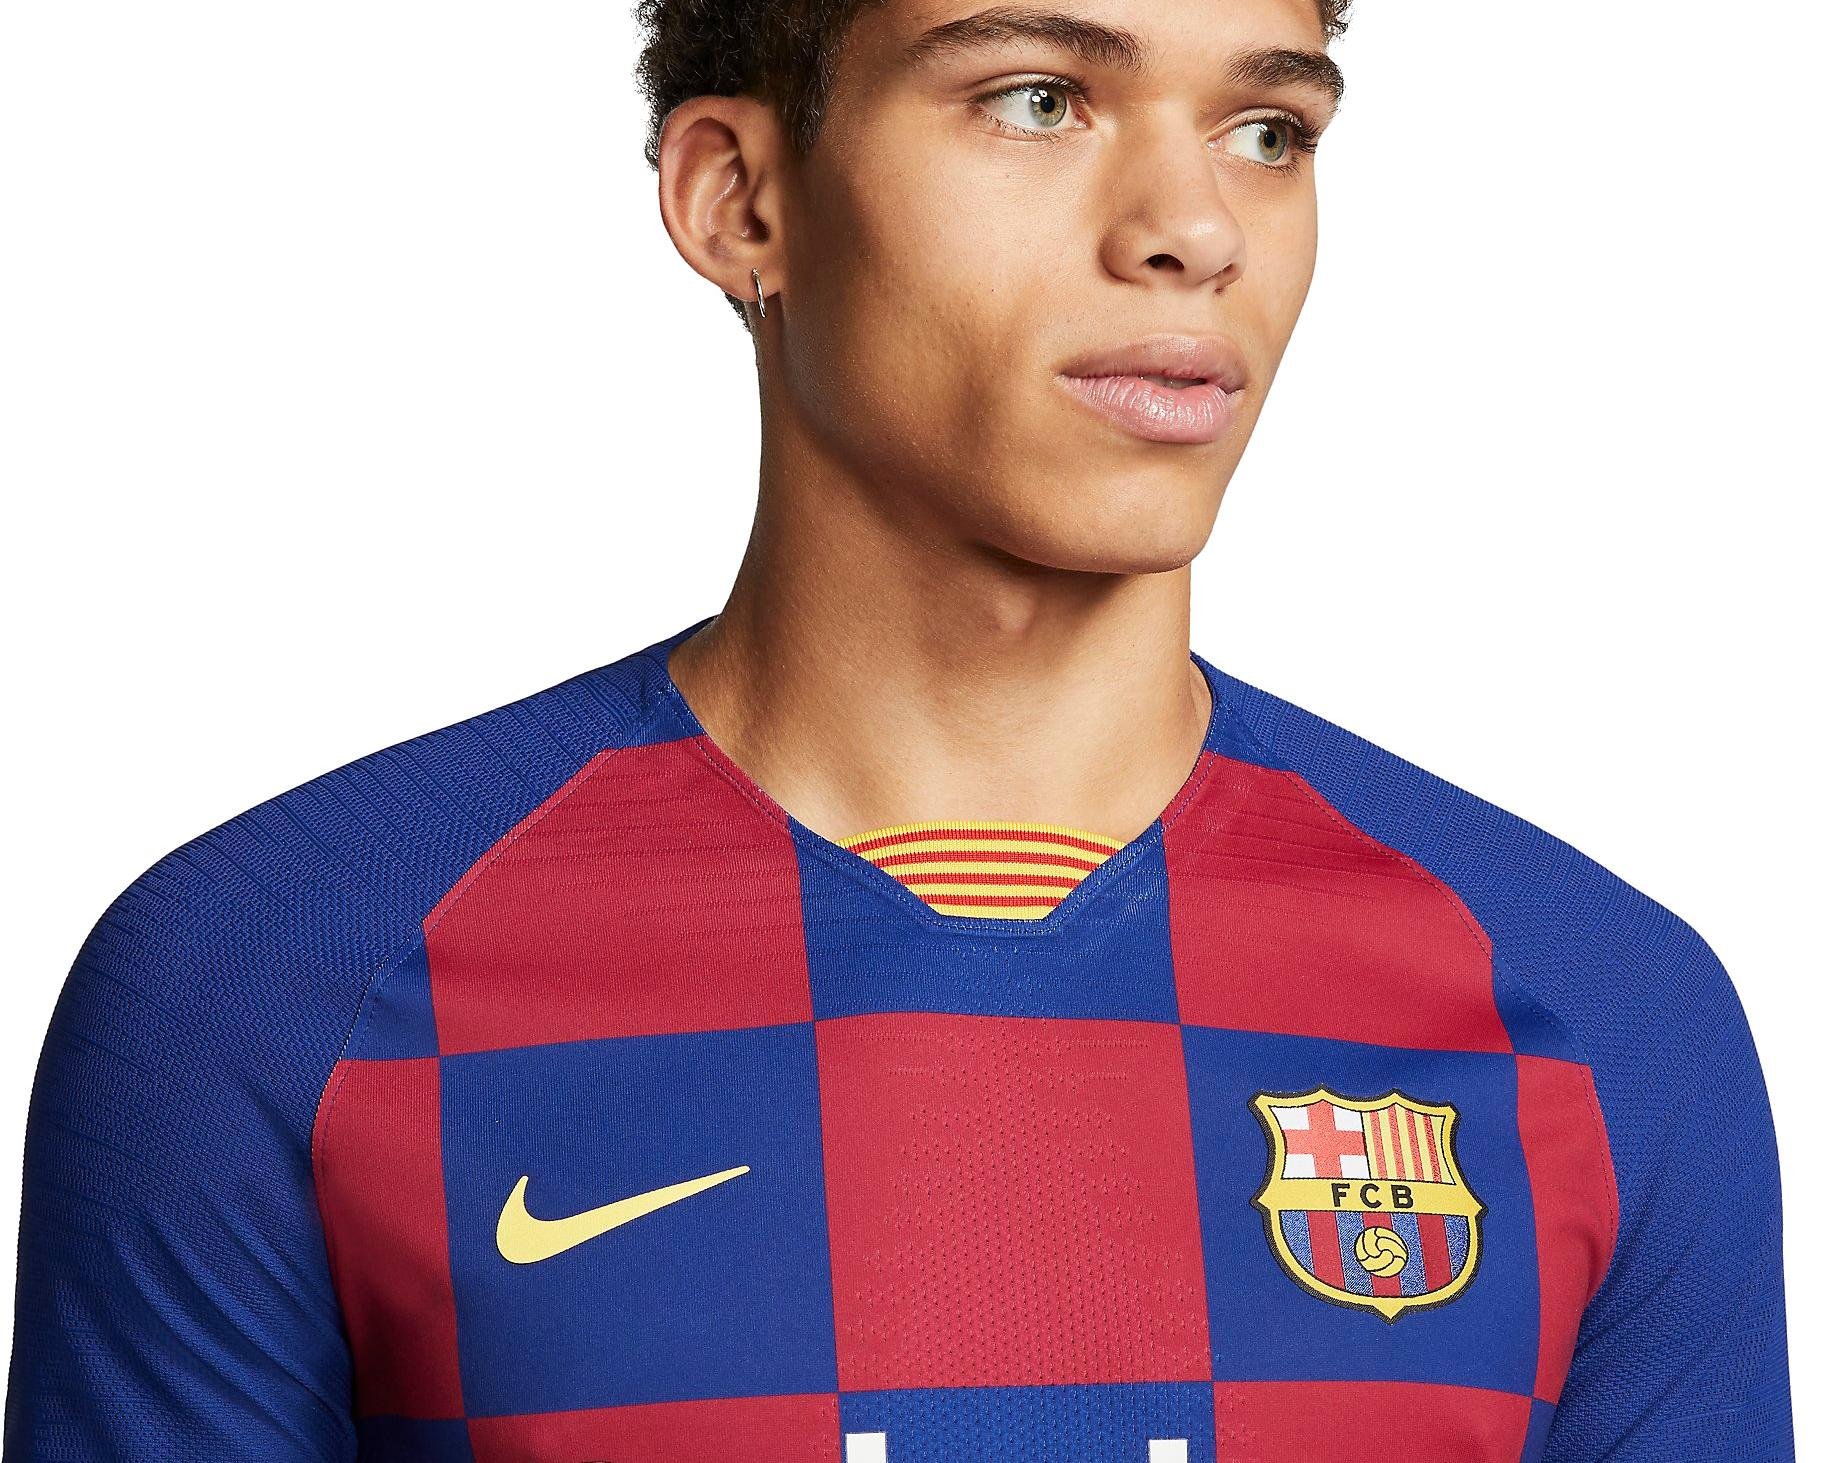 Originální domácí dres Nike Vapor FC Barcelona 2019/20